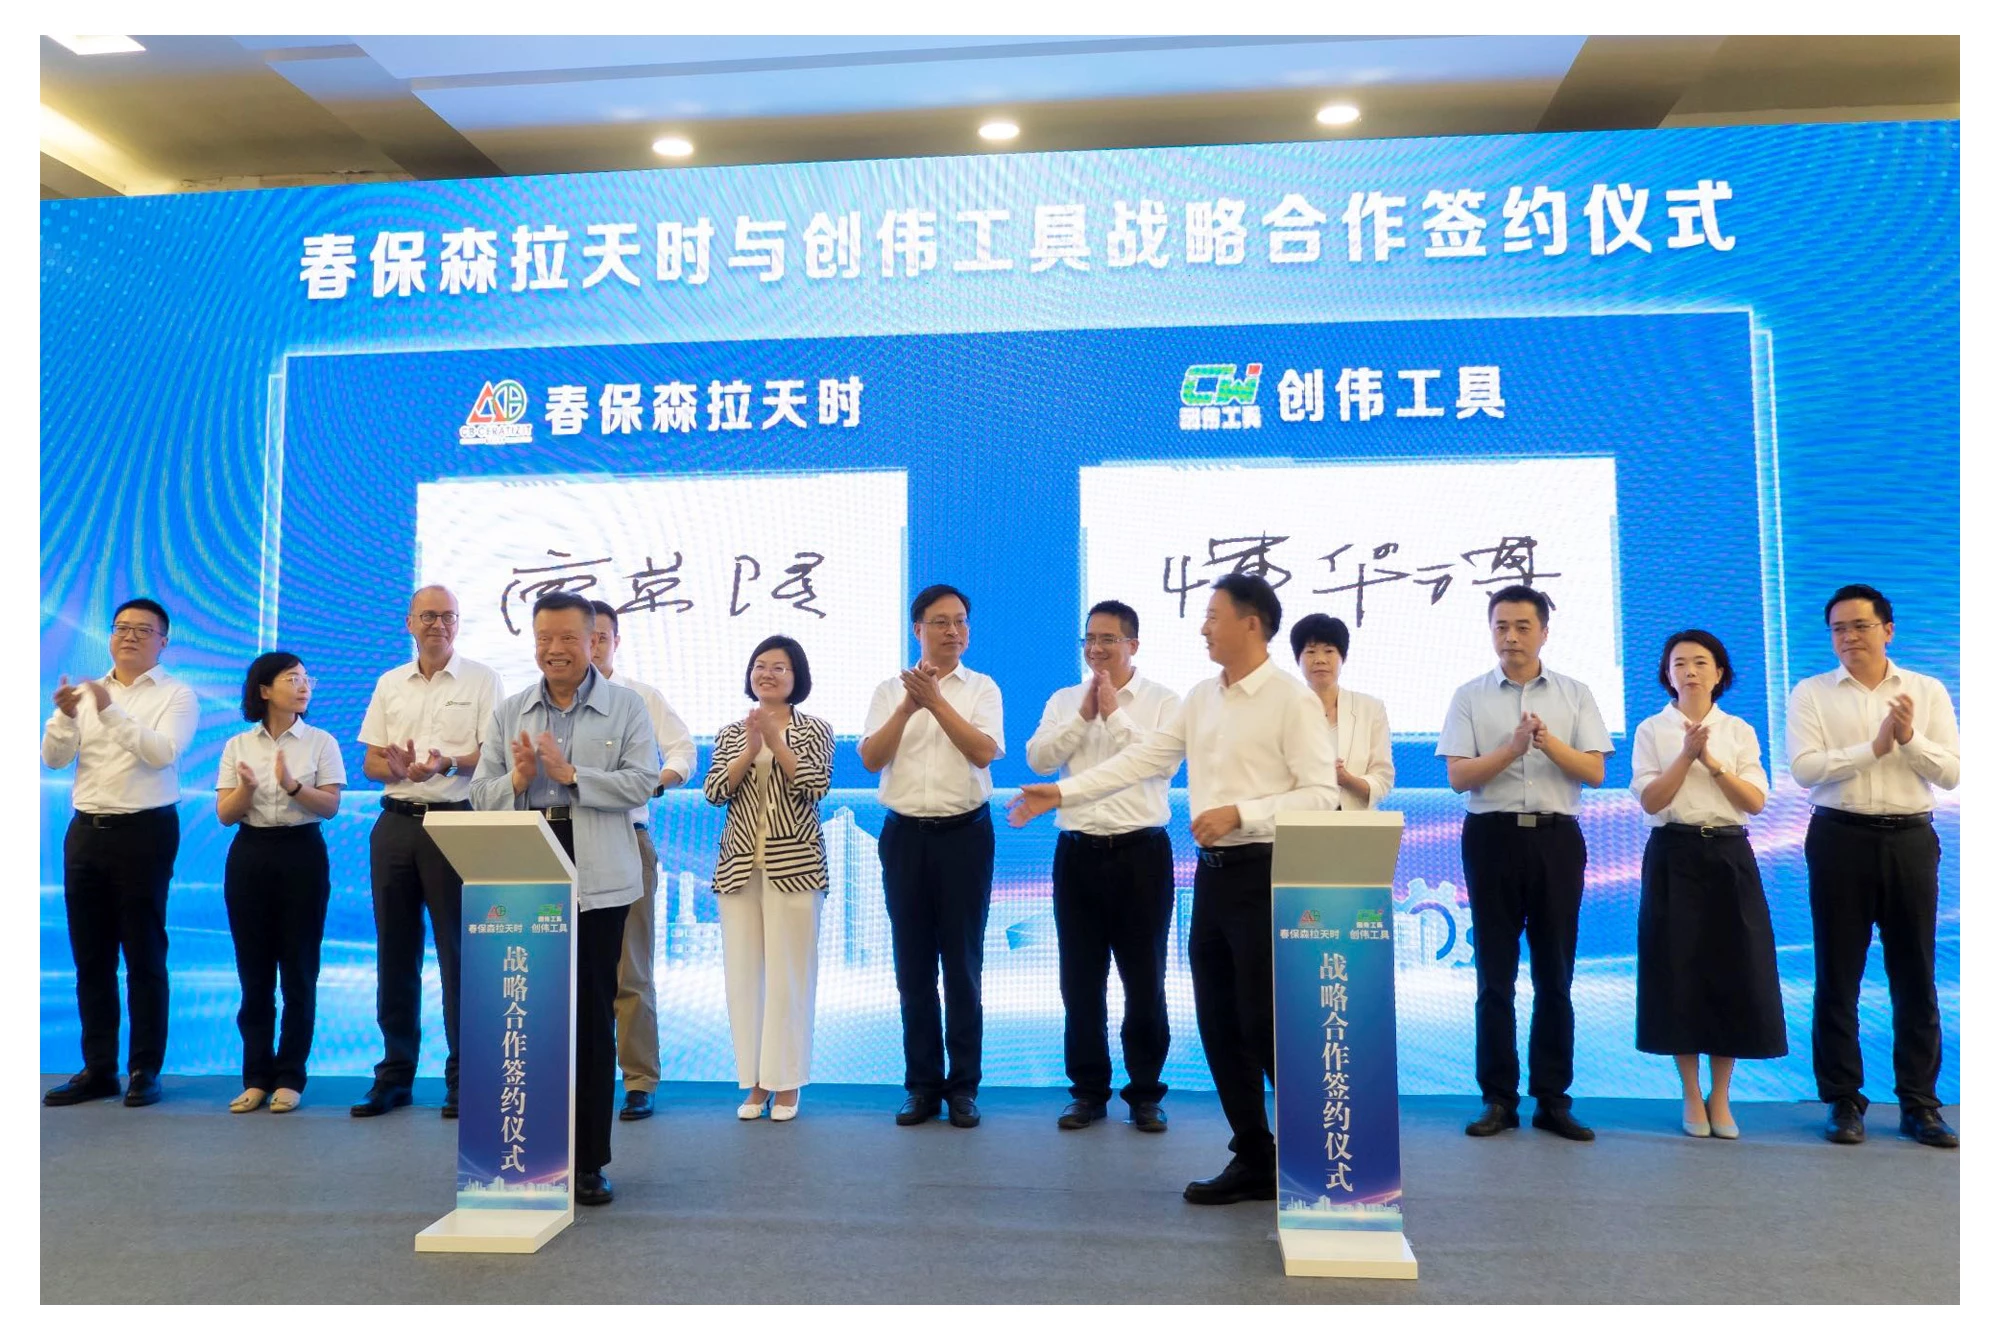 CERATIZIT announces the acquisition of Changzhou CW Toolmaker Inc.